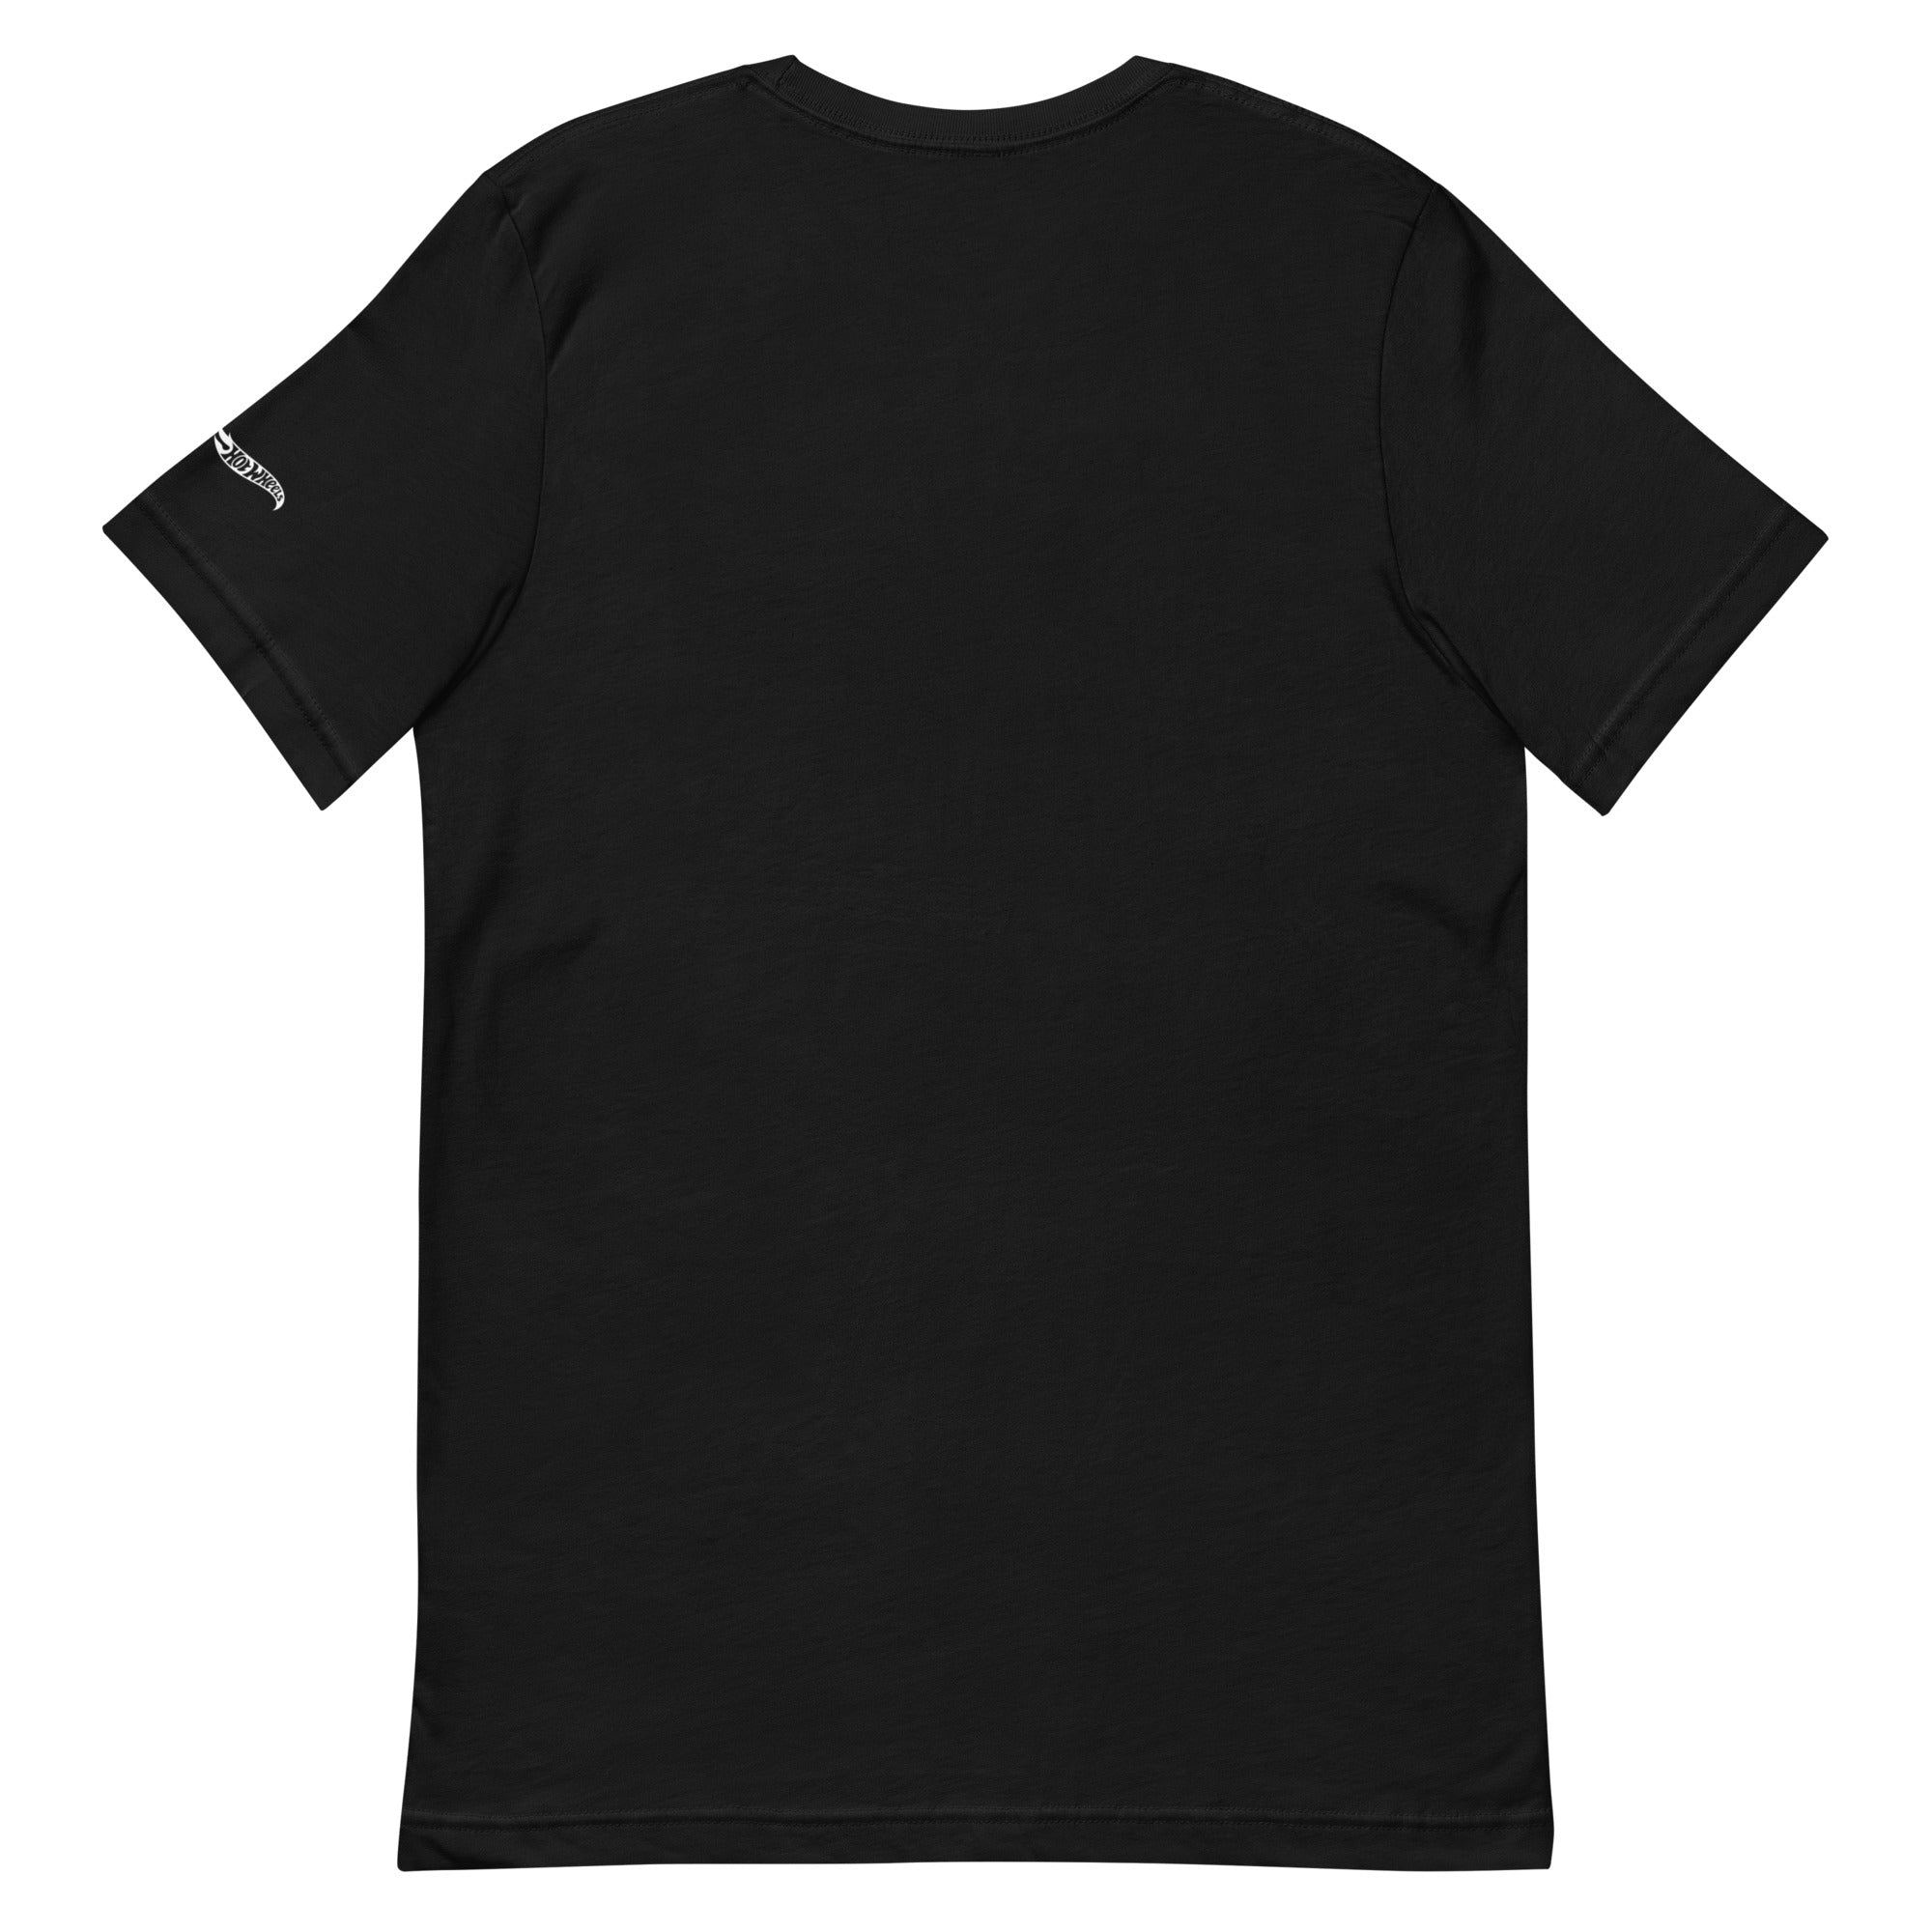 MEGA Build your Fandom T-Shirt